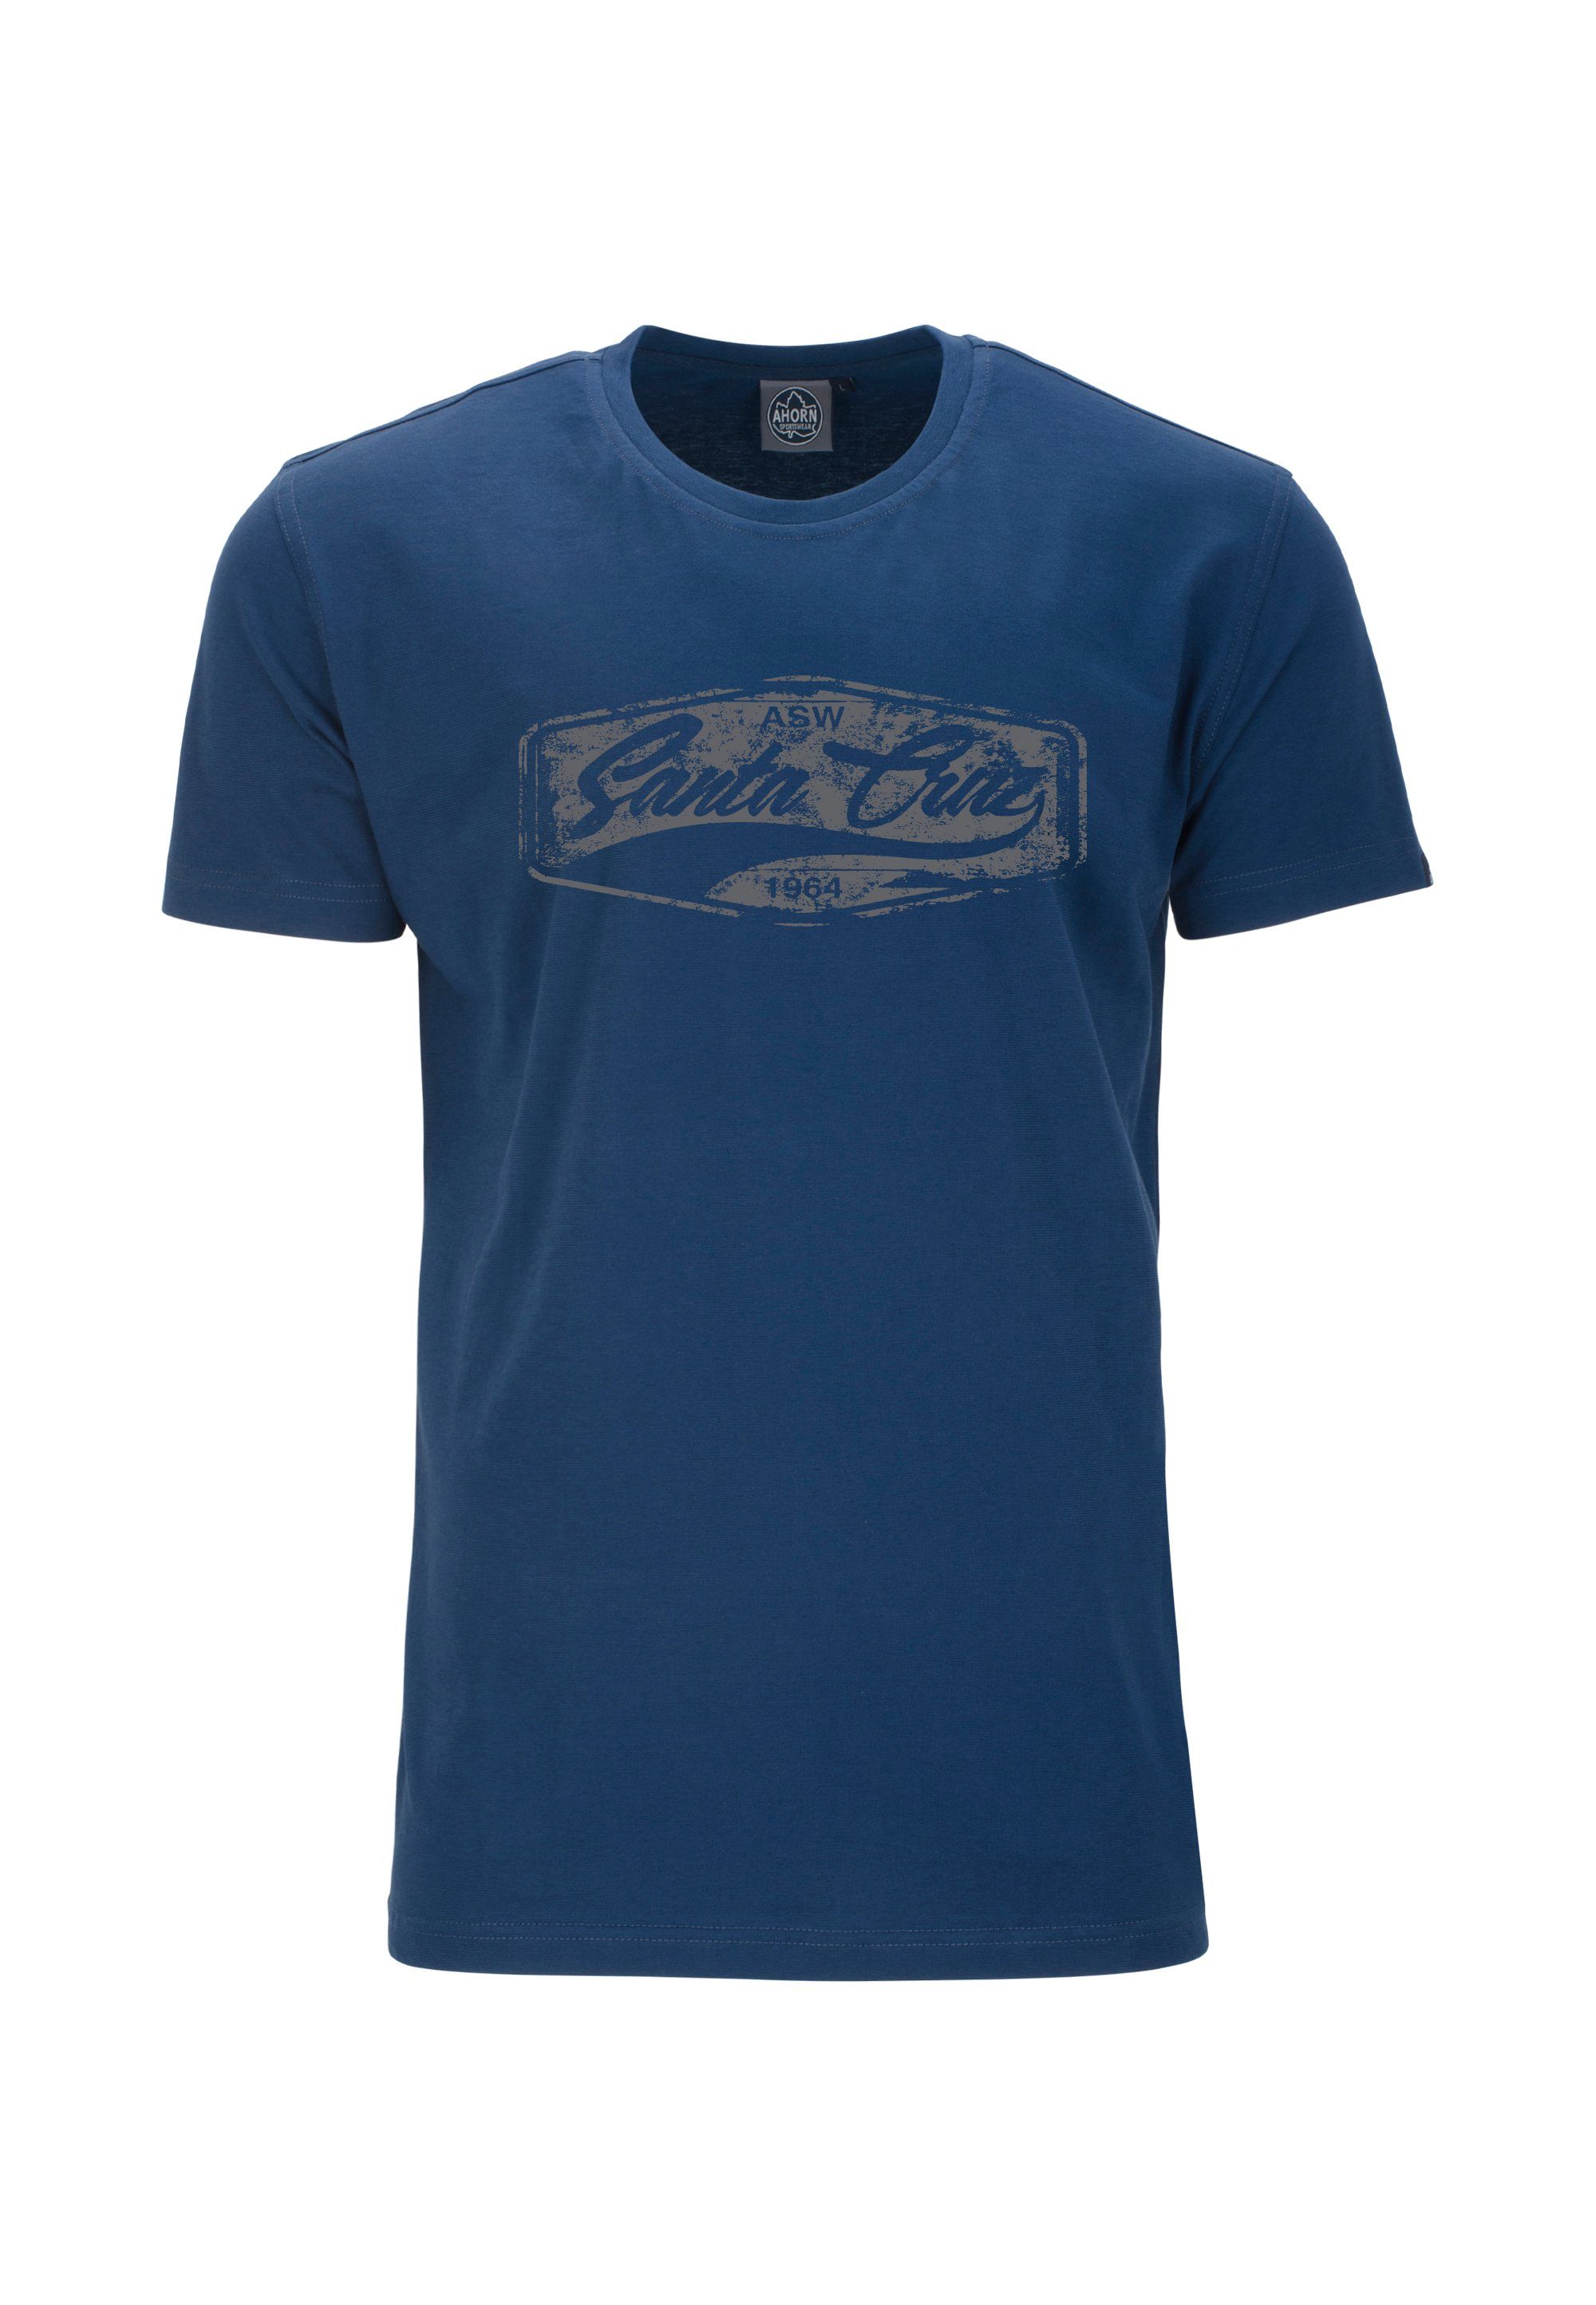 SPORTSWEAR im SEED CRUZ_POPPY AHORN klassischen T-Shirt blau Schnitt SANTA